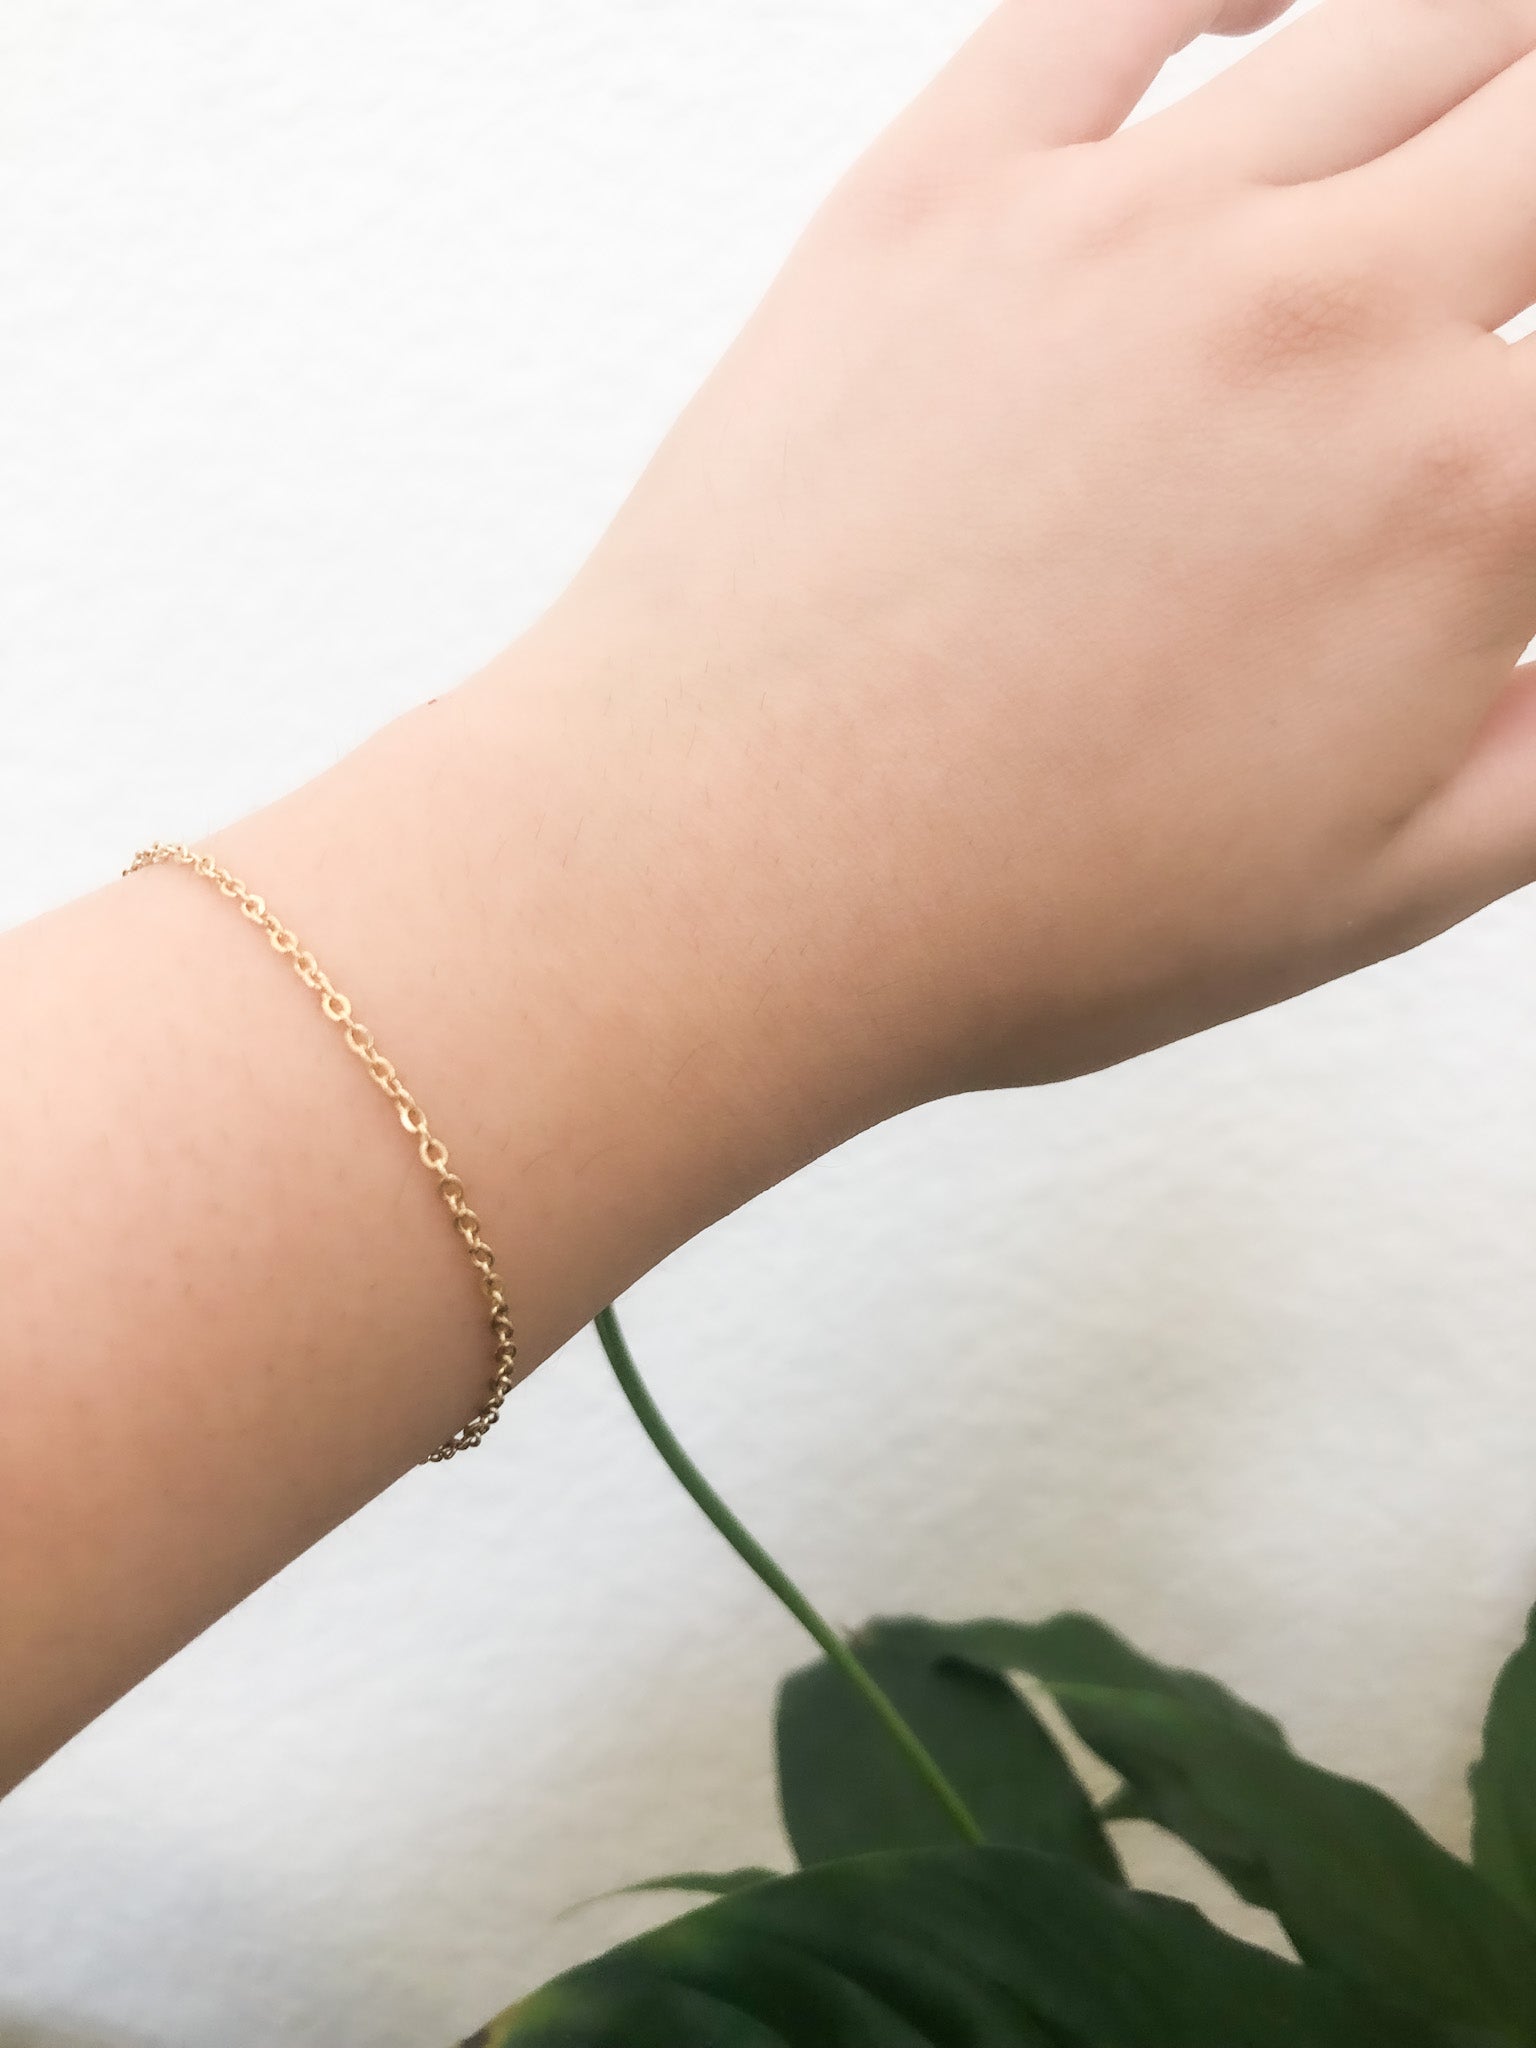 Dainty gold bracelet